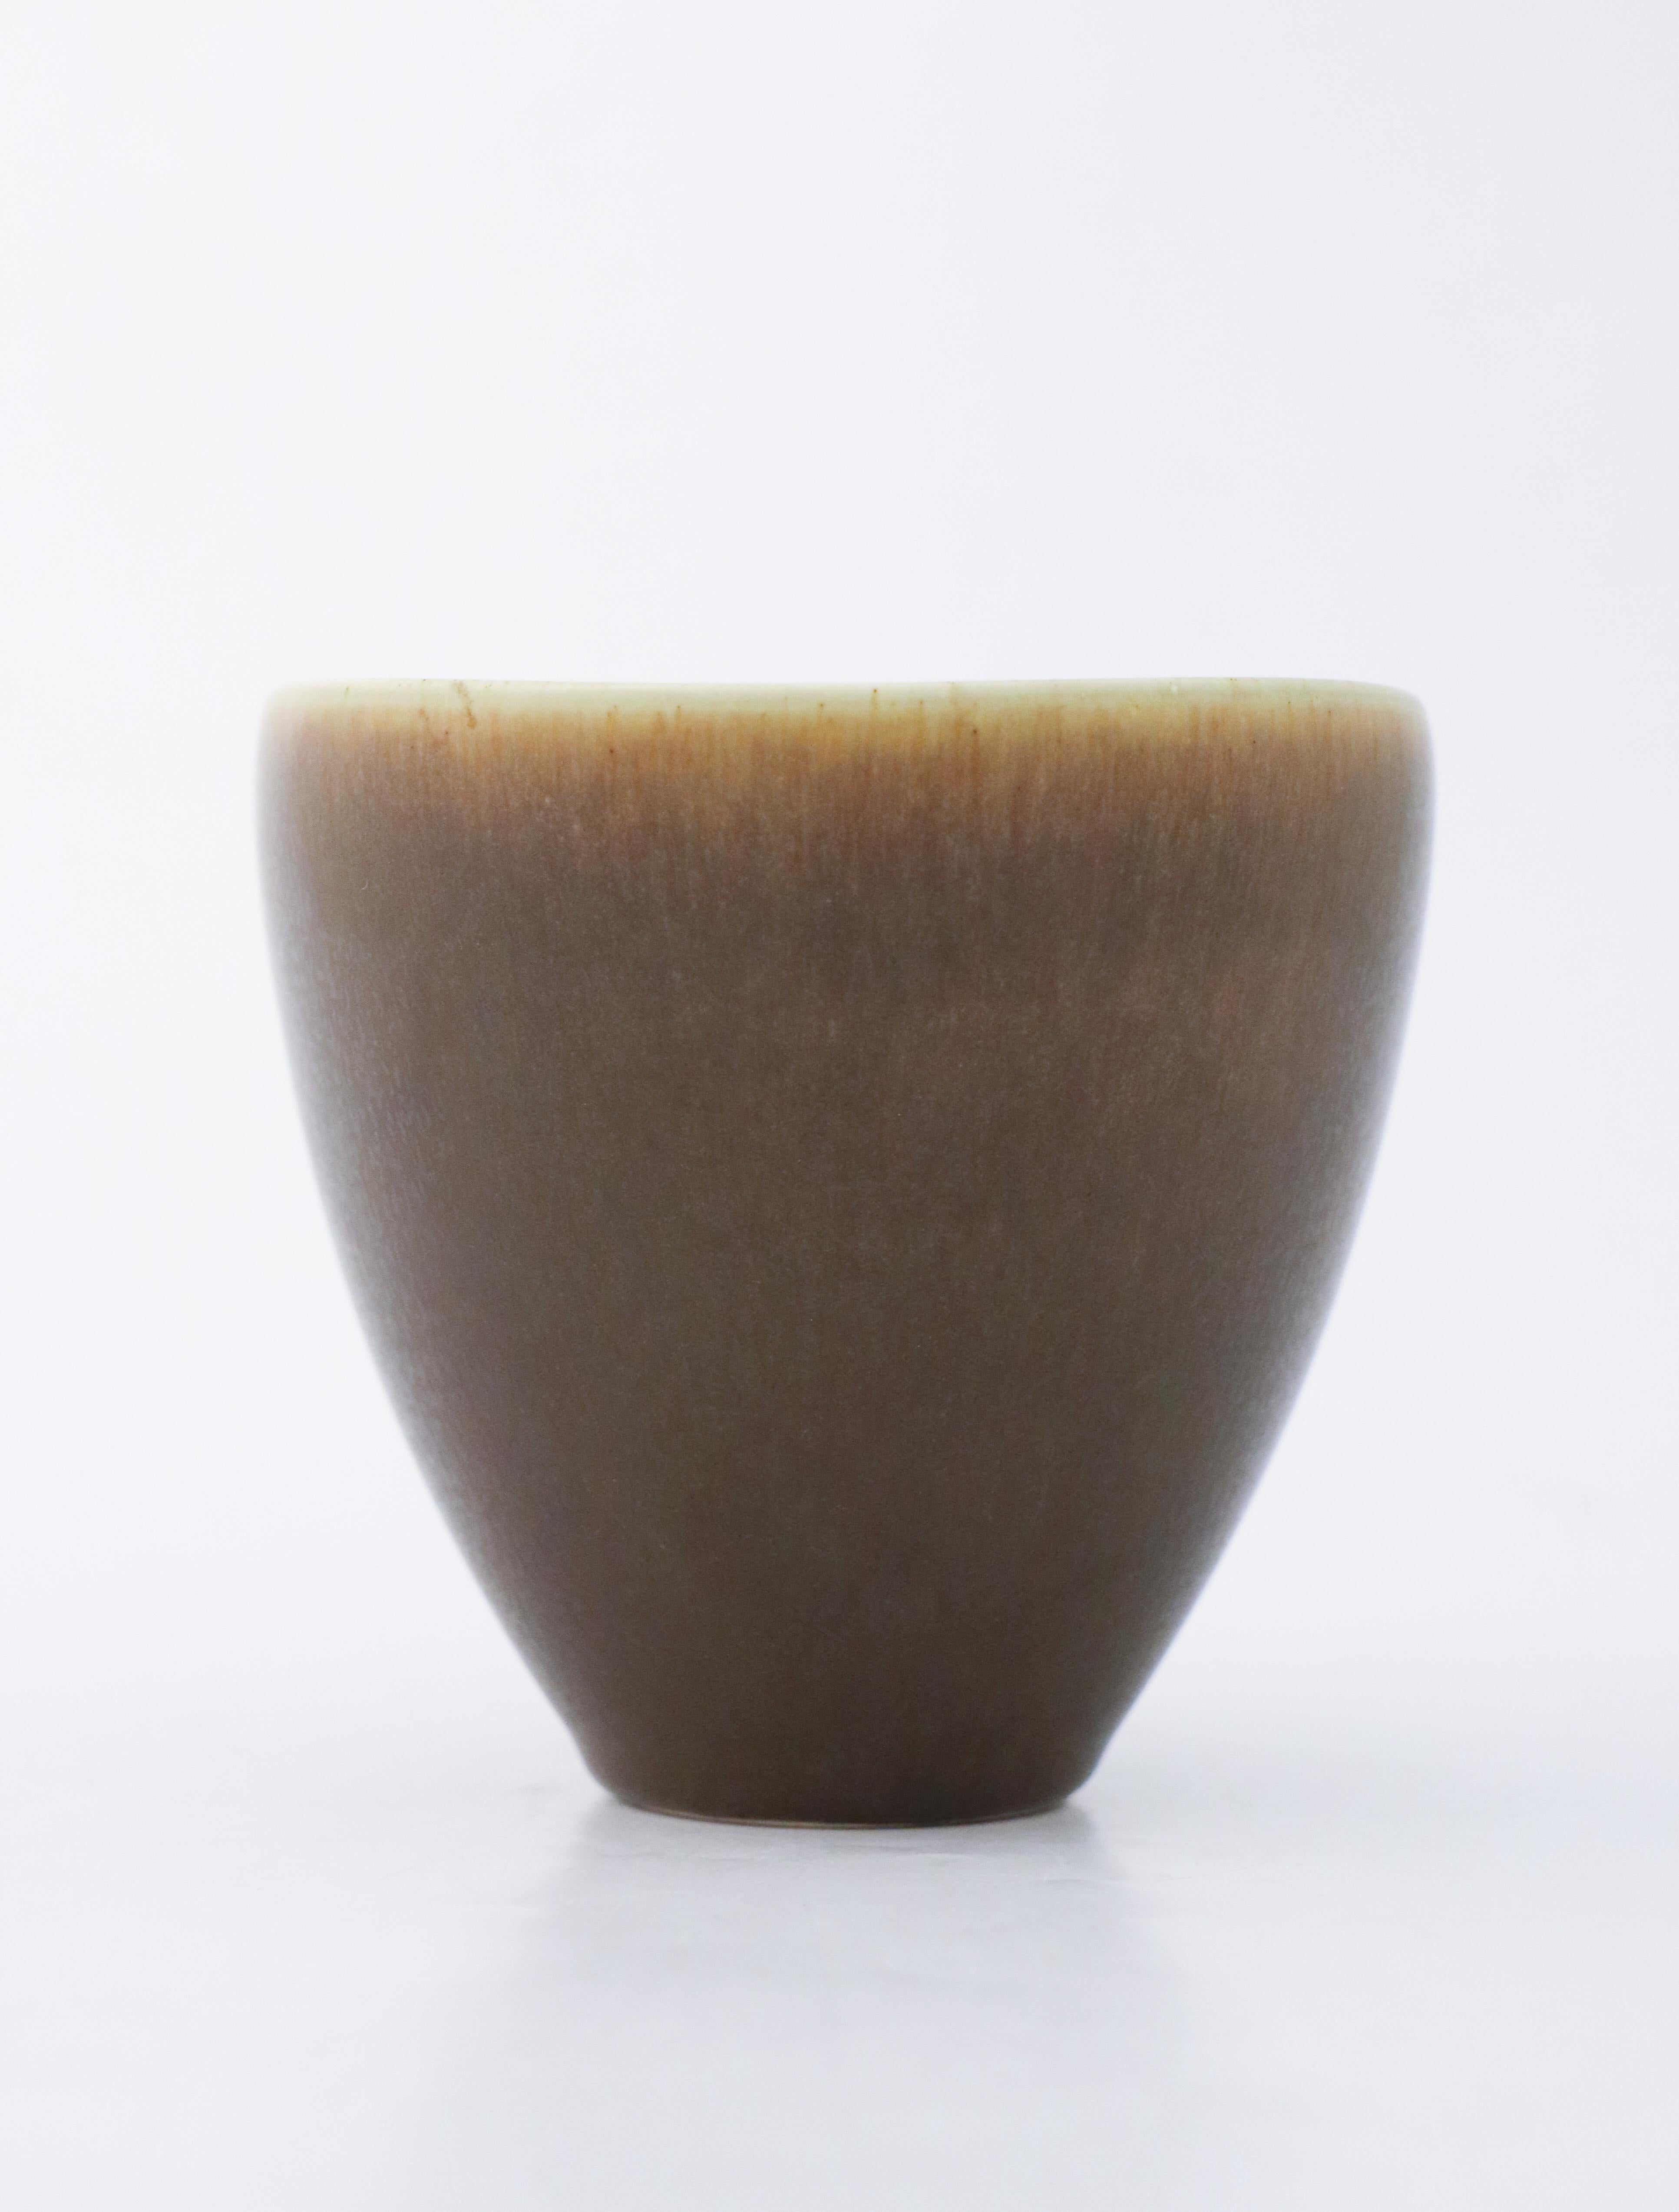 Porcelain Large Brown Bowl, Palshus, Denmark Per Linnemann-Schmidt, Scandinavian Modern